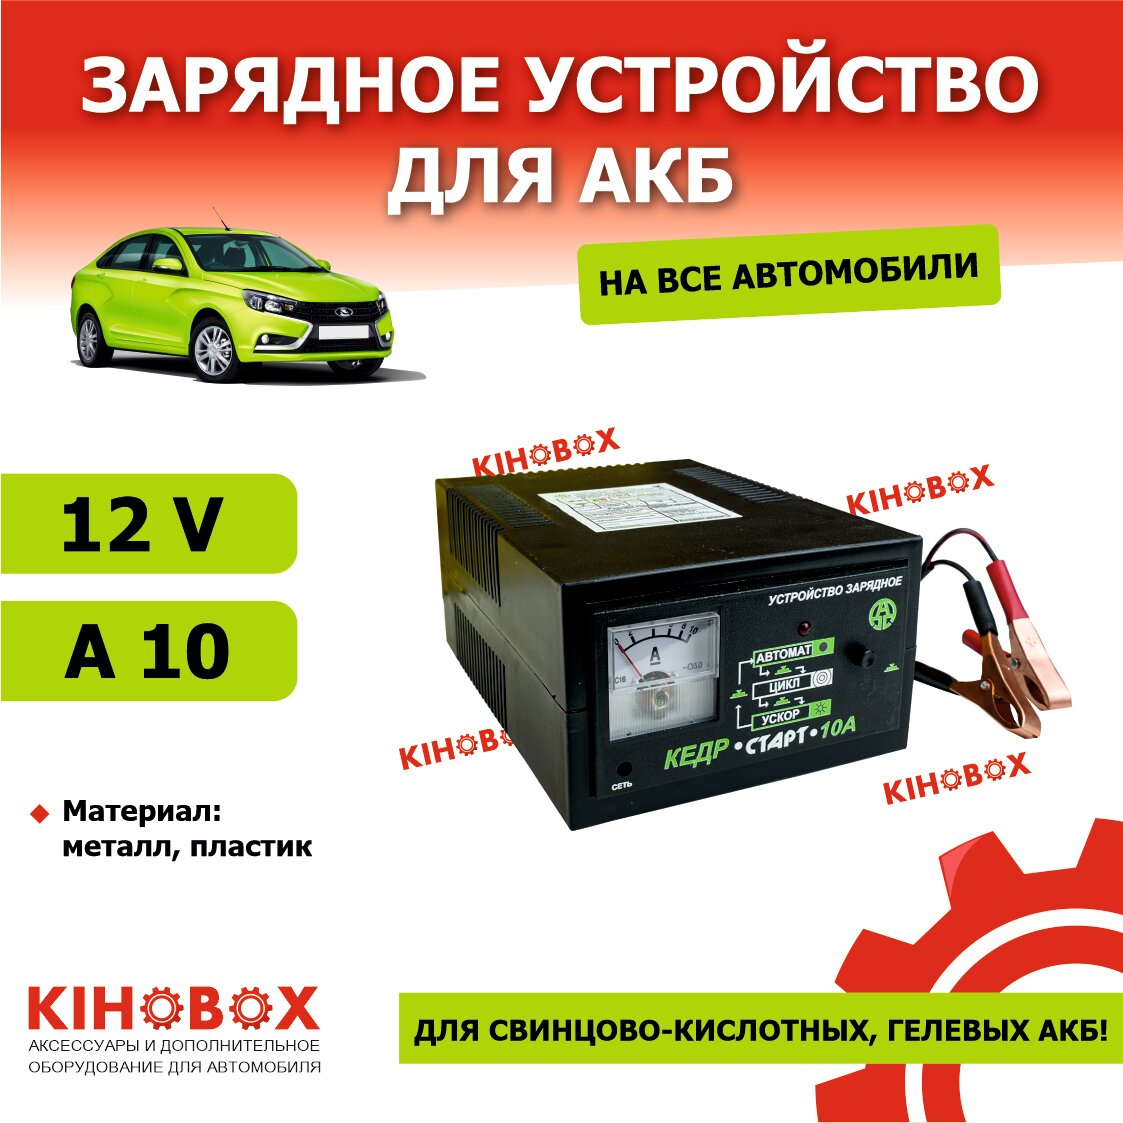 Зарядное утсройство для АКБ автоматическое кедр-старт 10А 12V (есть ускоренный режим) АКБ KIHOBOX АРТ 5801302